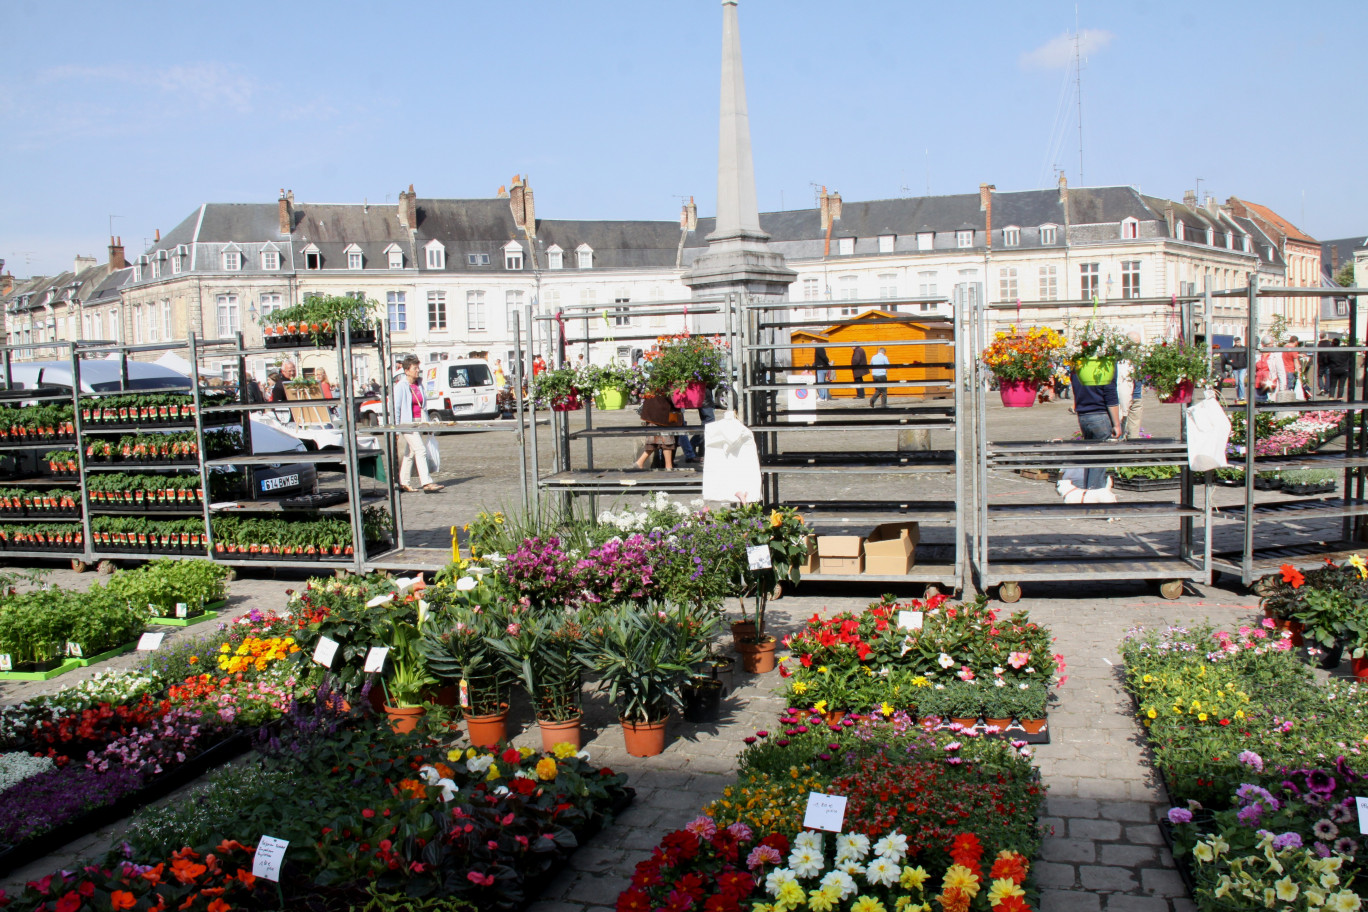 La place octogonale Victor Hugo d’Arras, ensemble architectural du XVIIIème siècle,  est le lieu idéal pour accueillir chaque année le marché aux fleurs du 1er mai.